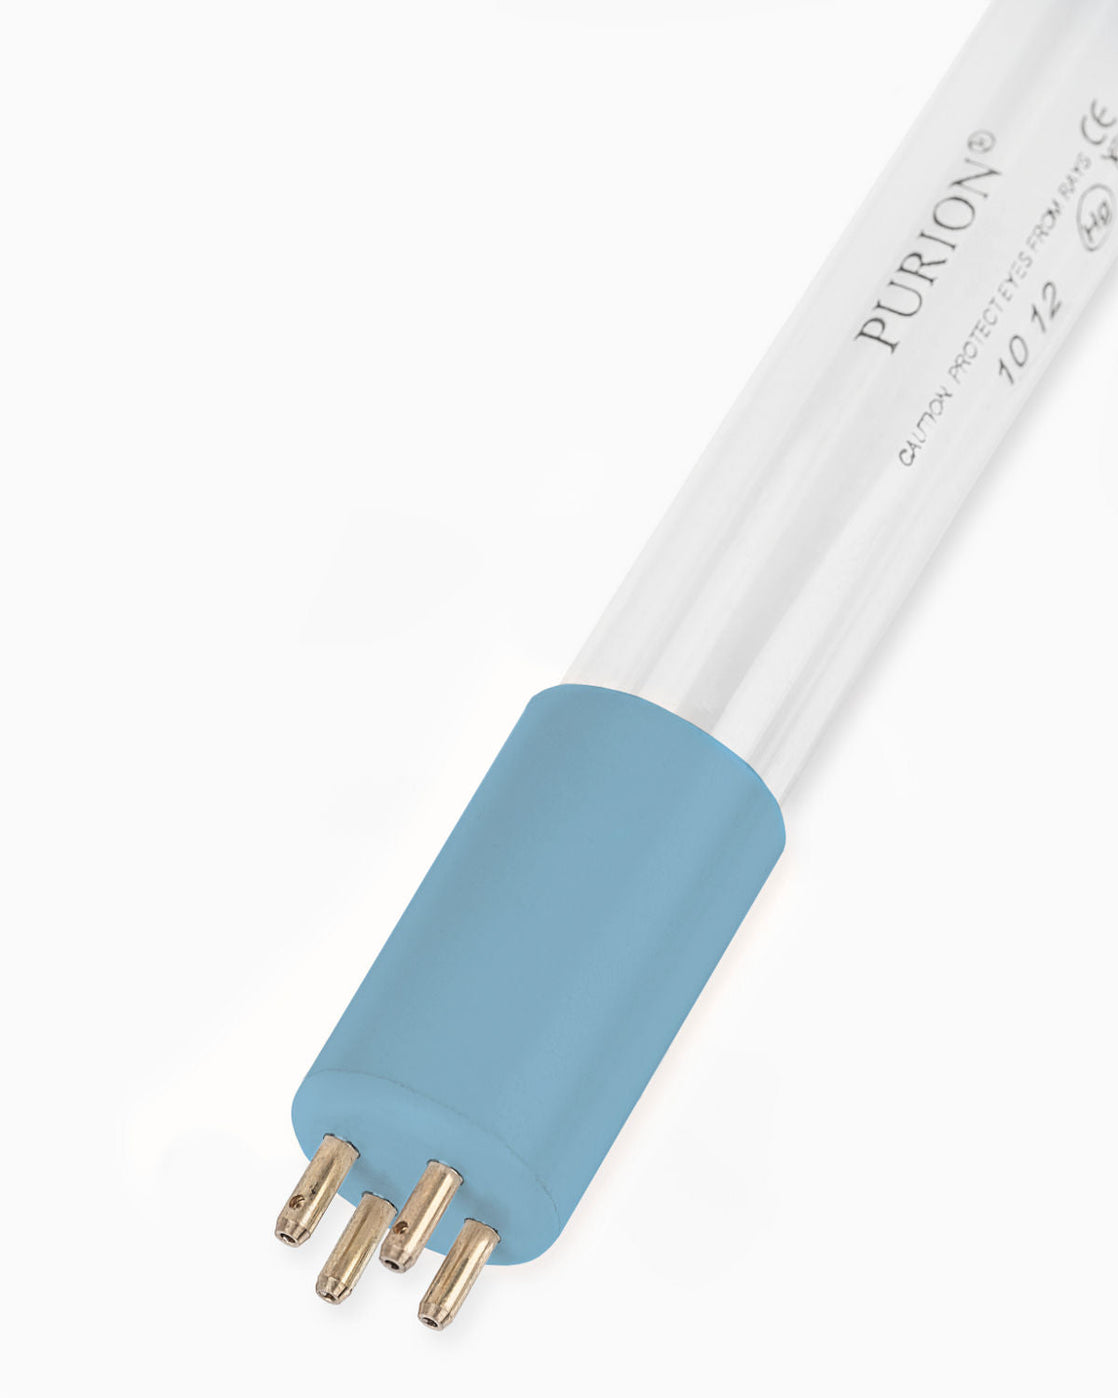 Eine PURION 1000 110 - 240 V AC ESM Blaulichtröhre auf weißem Hintergrund, die UV-C-Licht ausstrahlt, von der PURION GmbH.